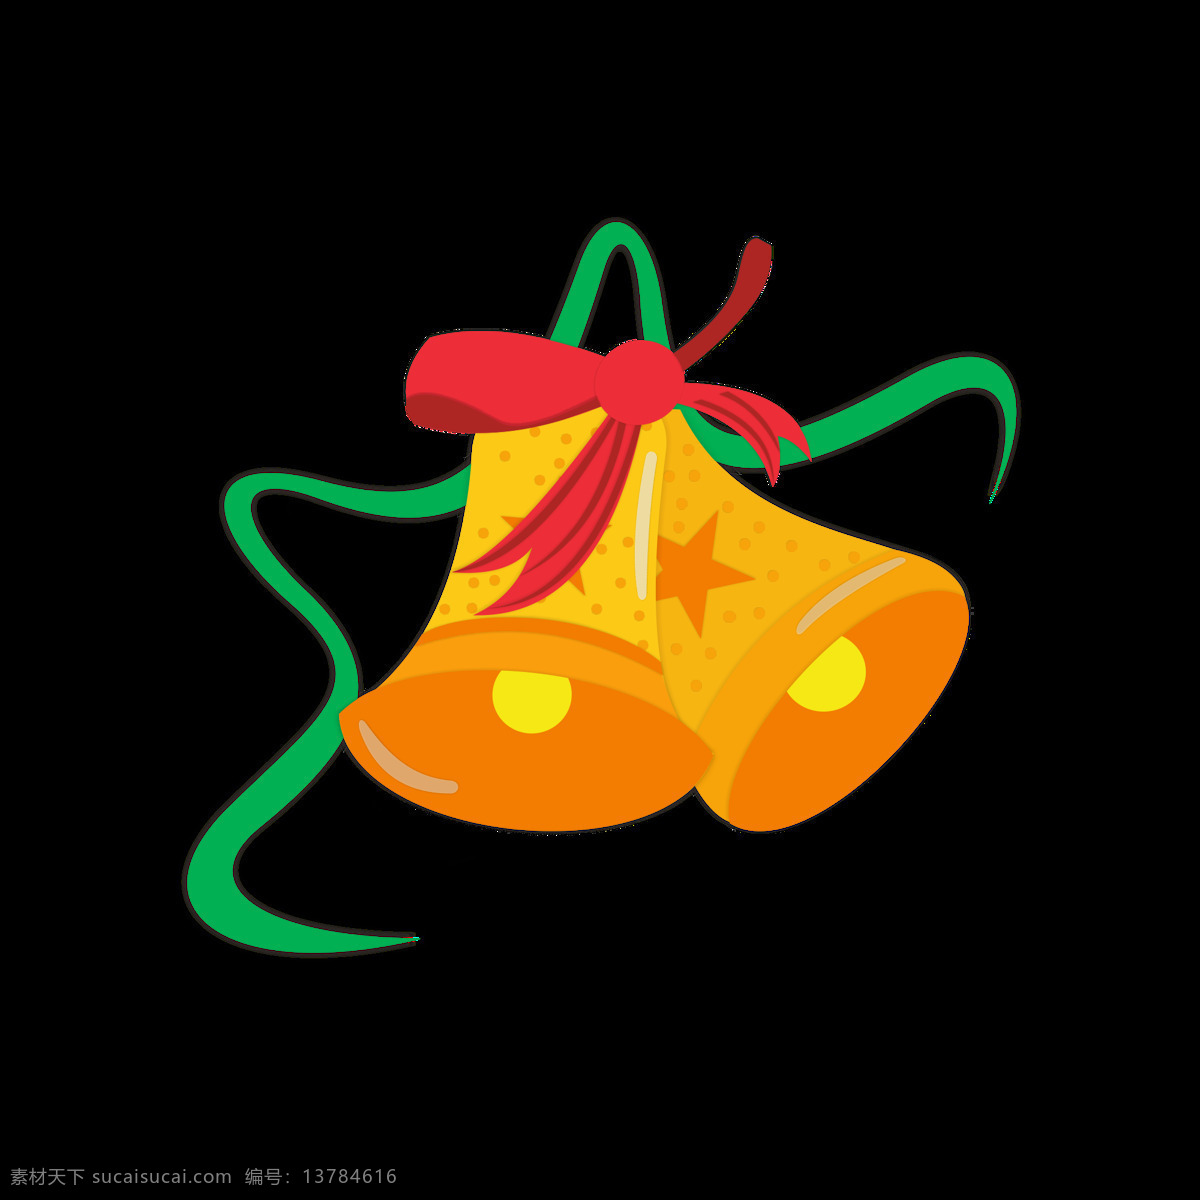 圣诞节 铃铛 元素 卡通 可爱 黄色 节日 元素设计